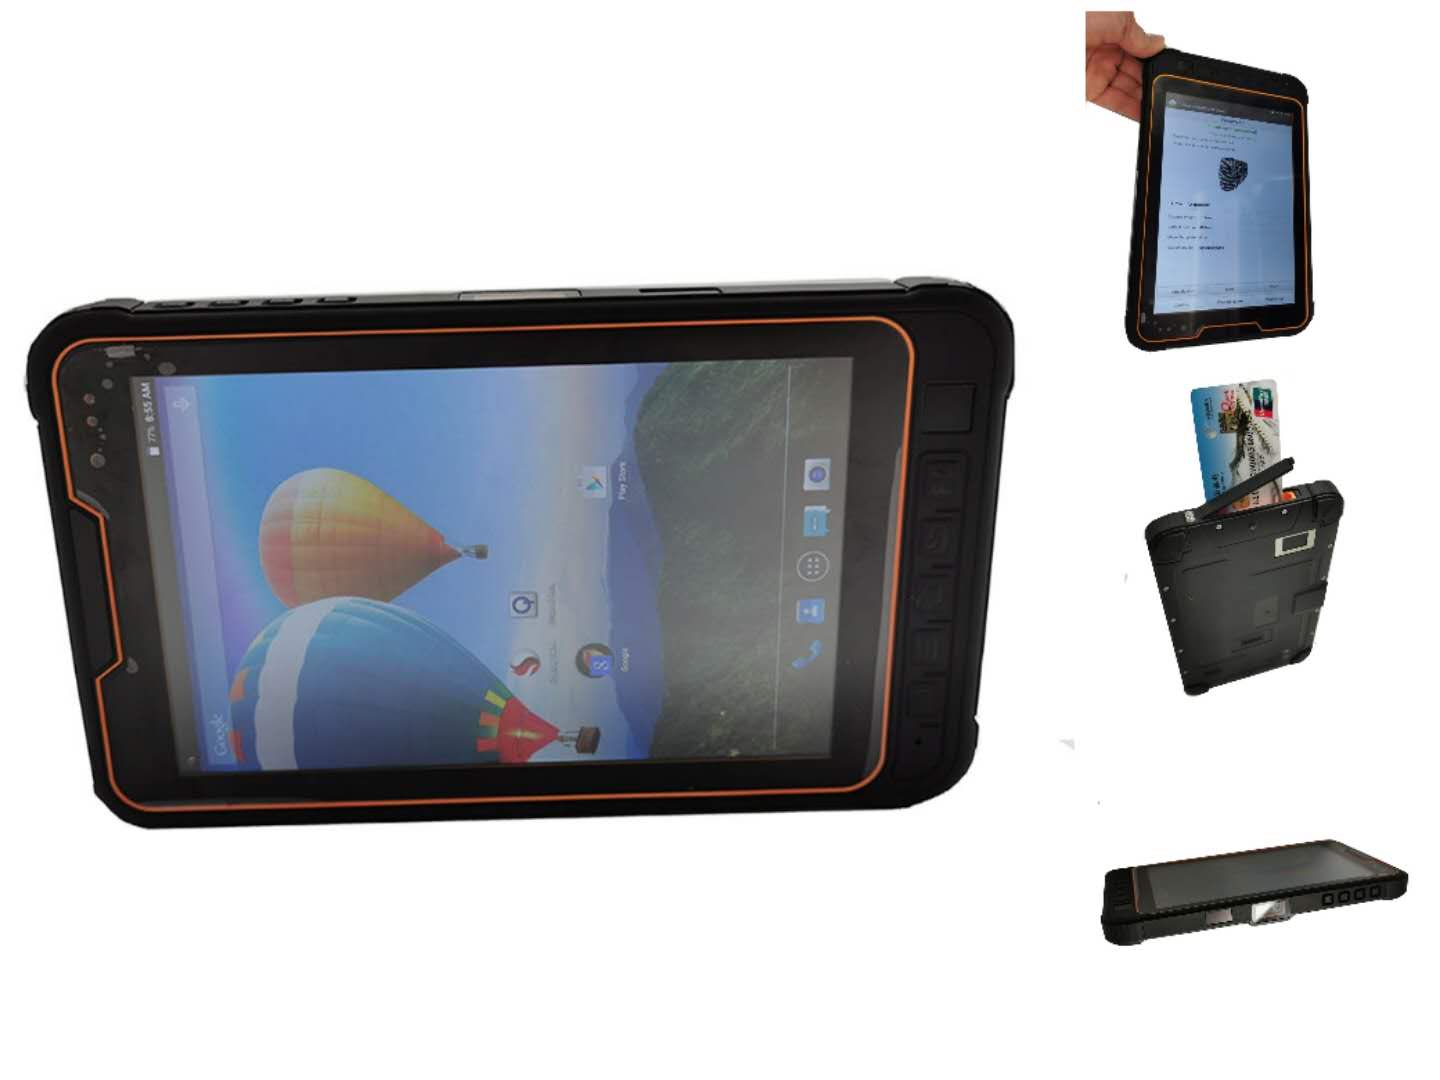 Tableta PDA de tarjeta inteligente con chip de lectura de medidor biométrico Android resistente IP68
